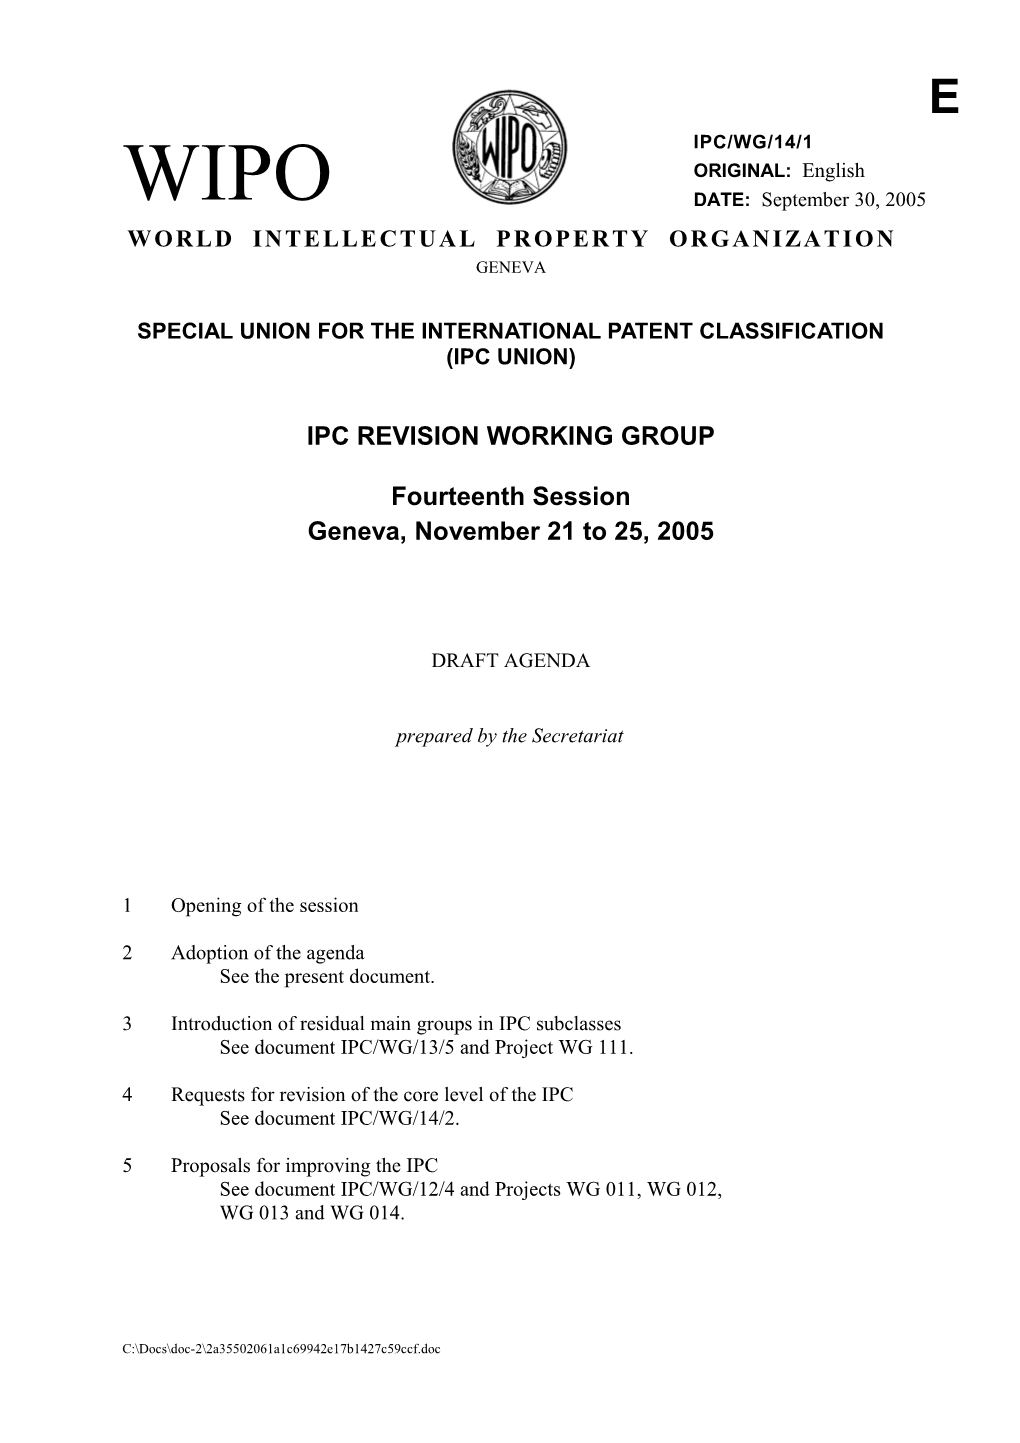 IPC/WG/14/1: Draft Agenda